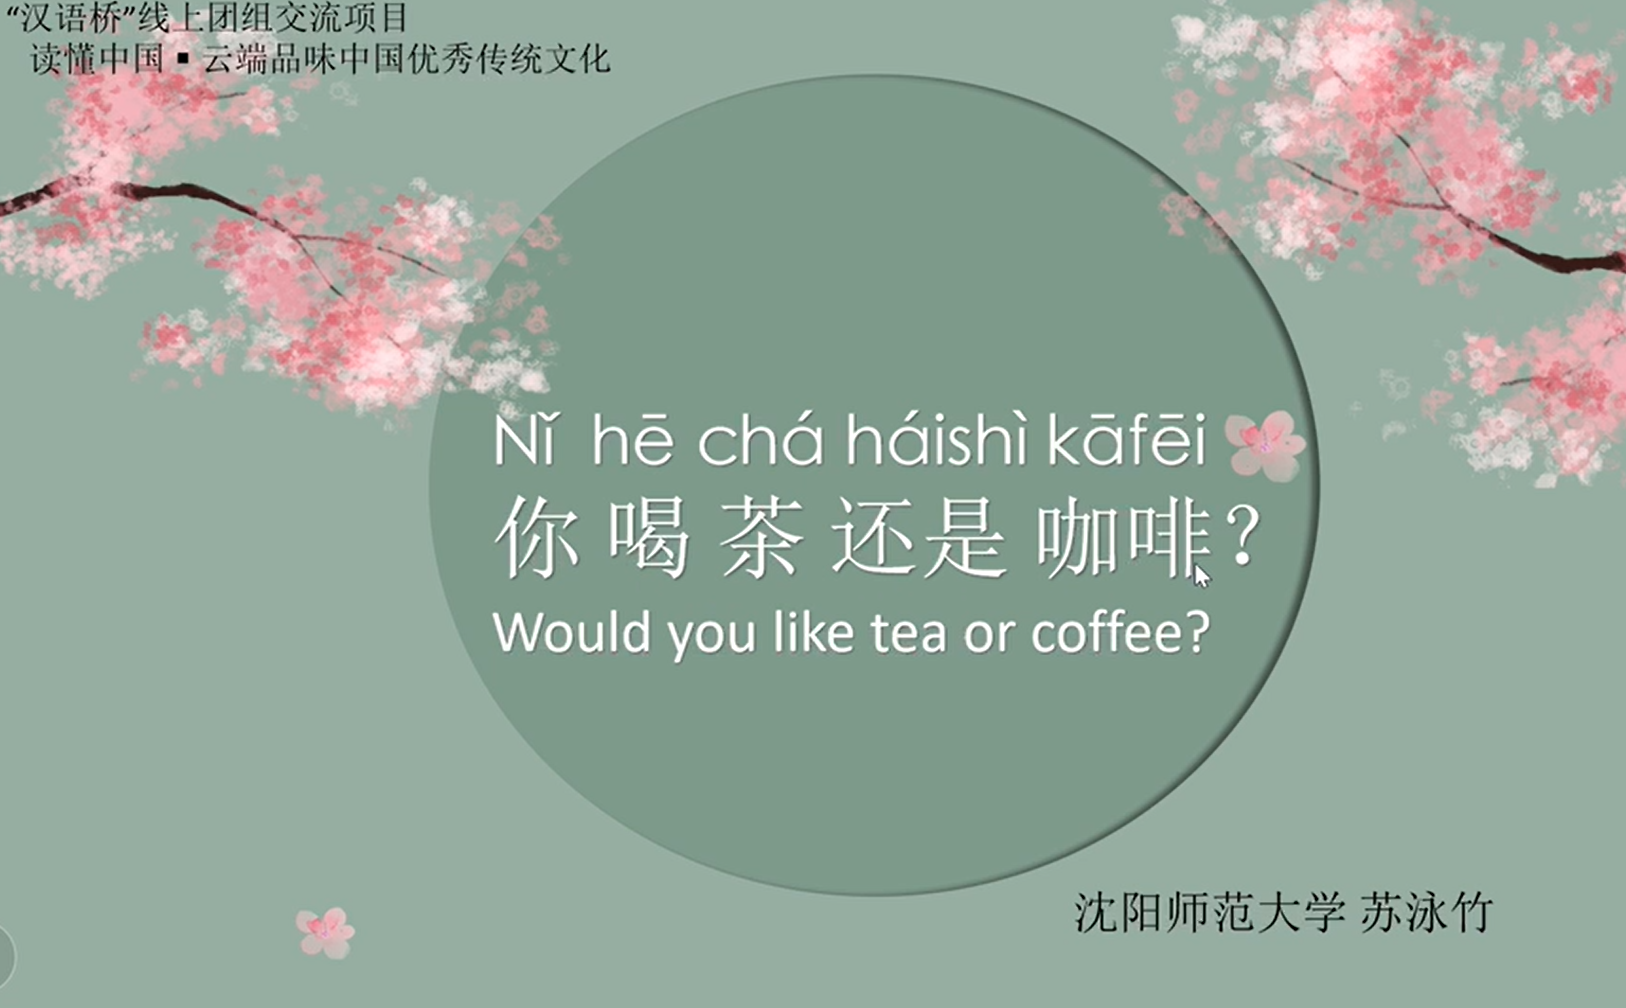 Would you like tea or coffee？